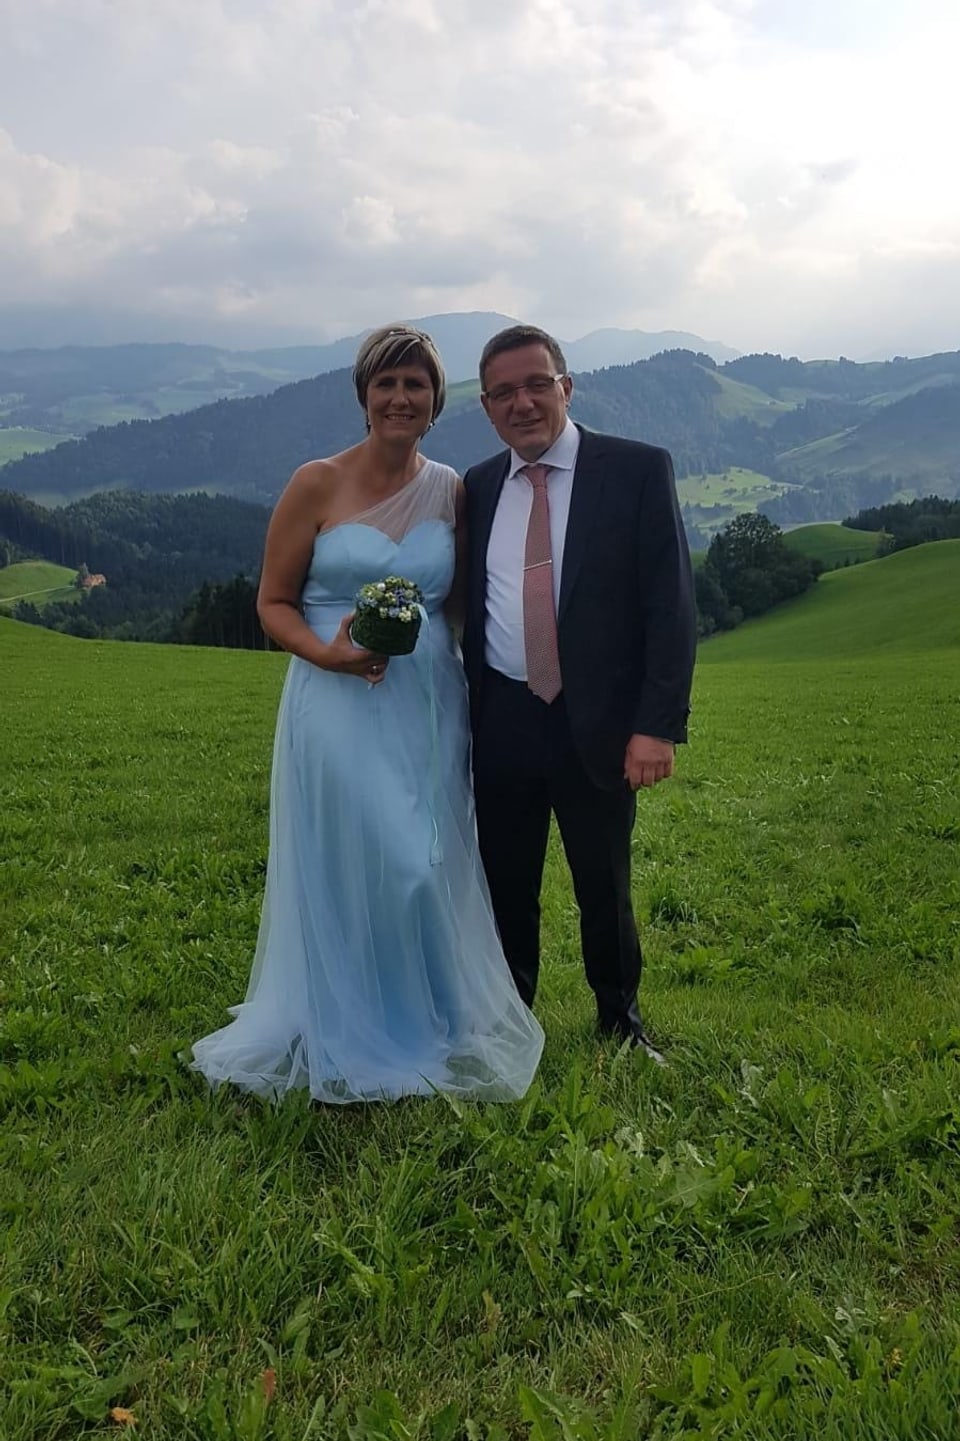 Ein Brautpaar, sie in hellblauem Kleid, er mit Anzug und Kravatte, stet auf einem grünen Feld, im Hintergrund hügelige Landschaft.